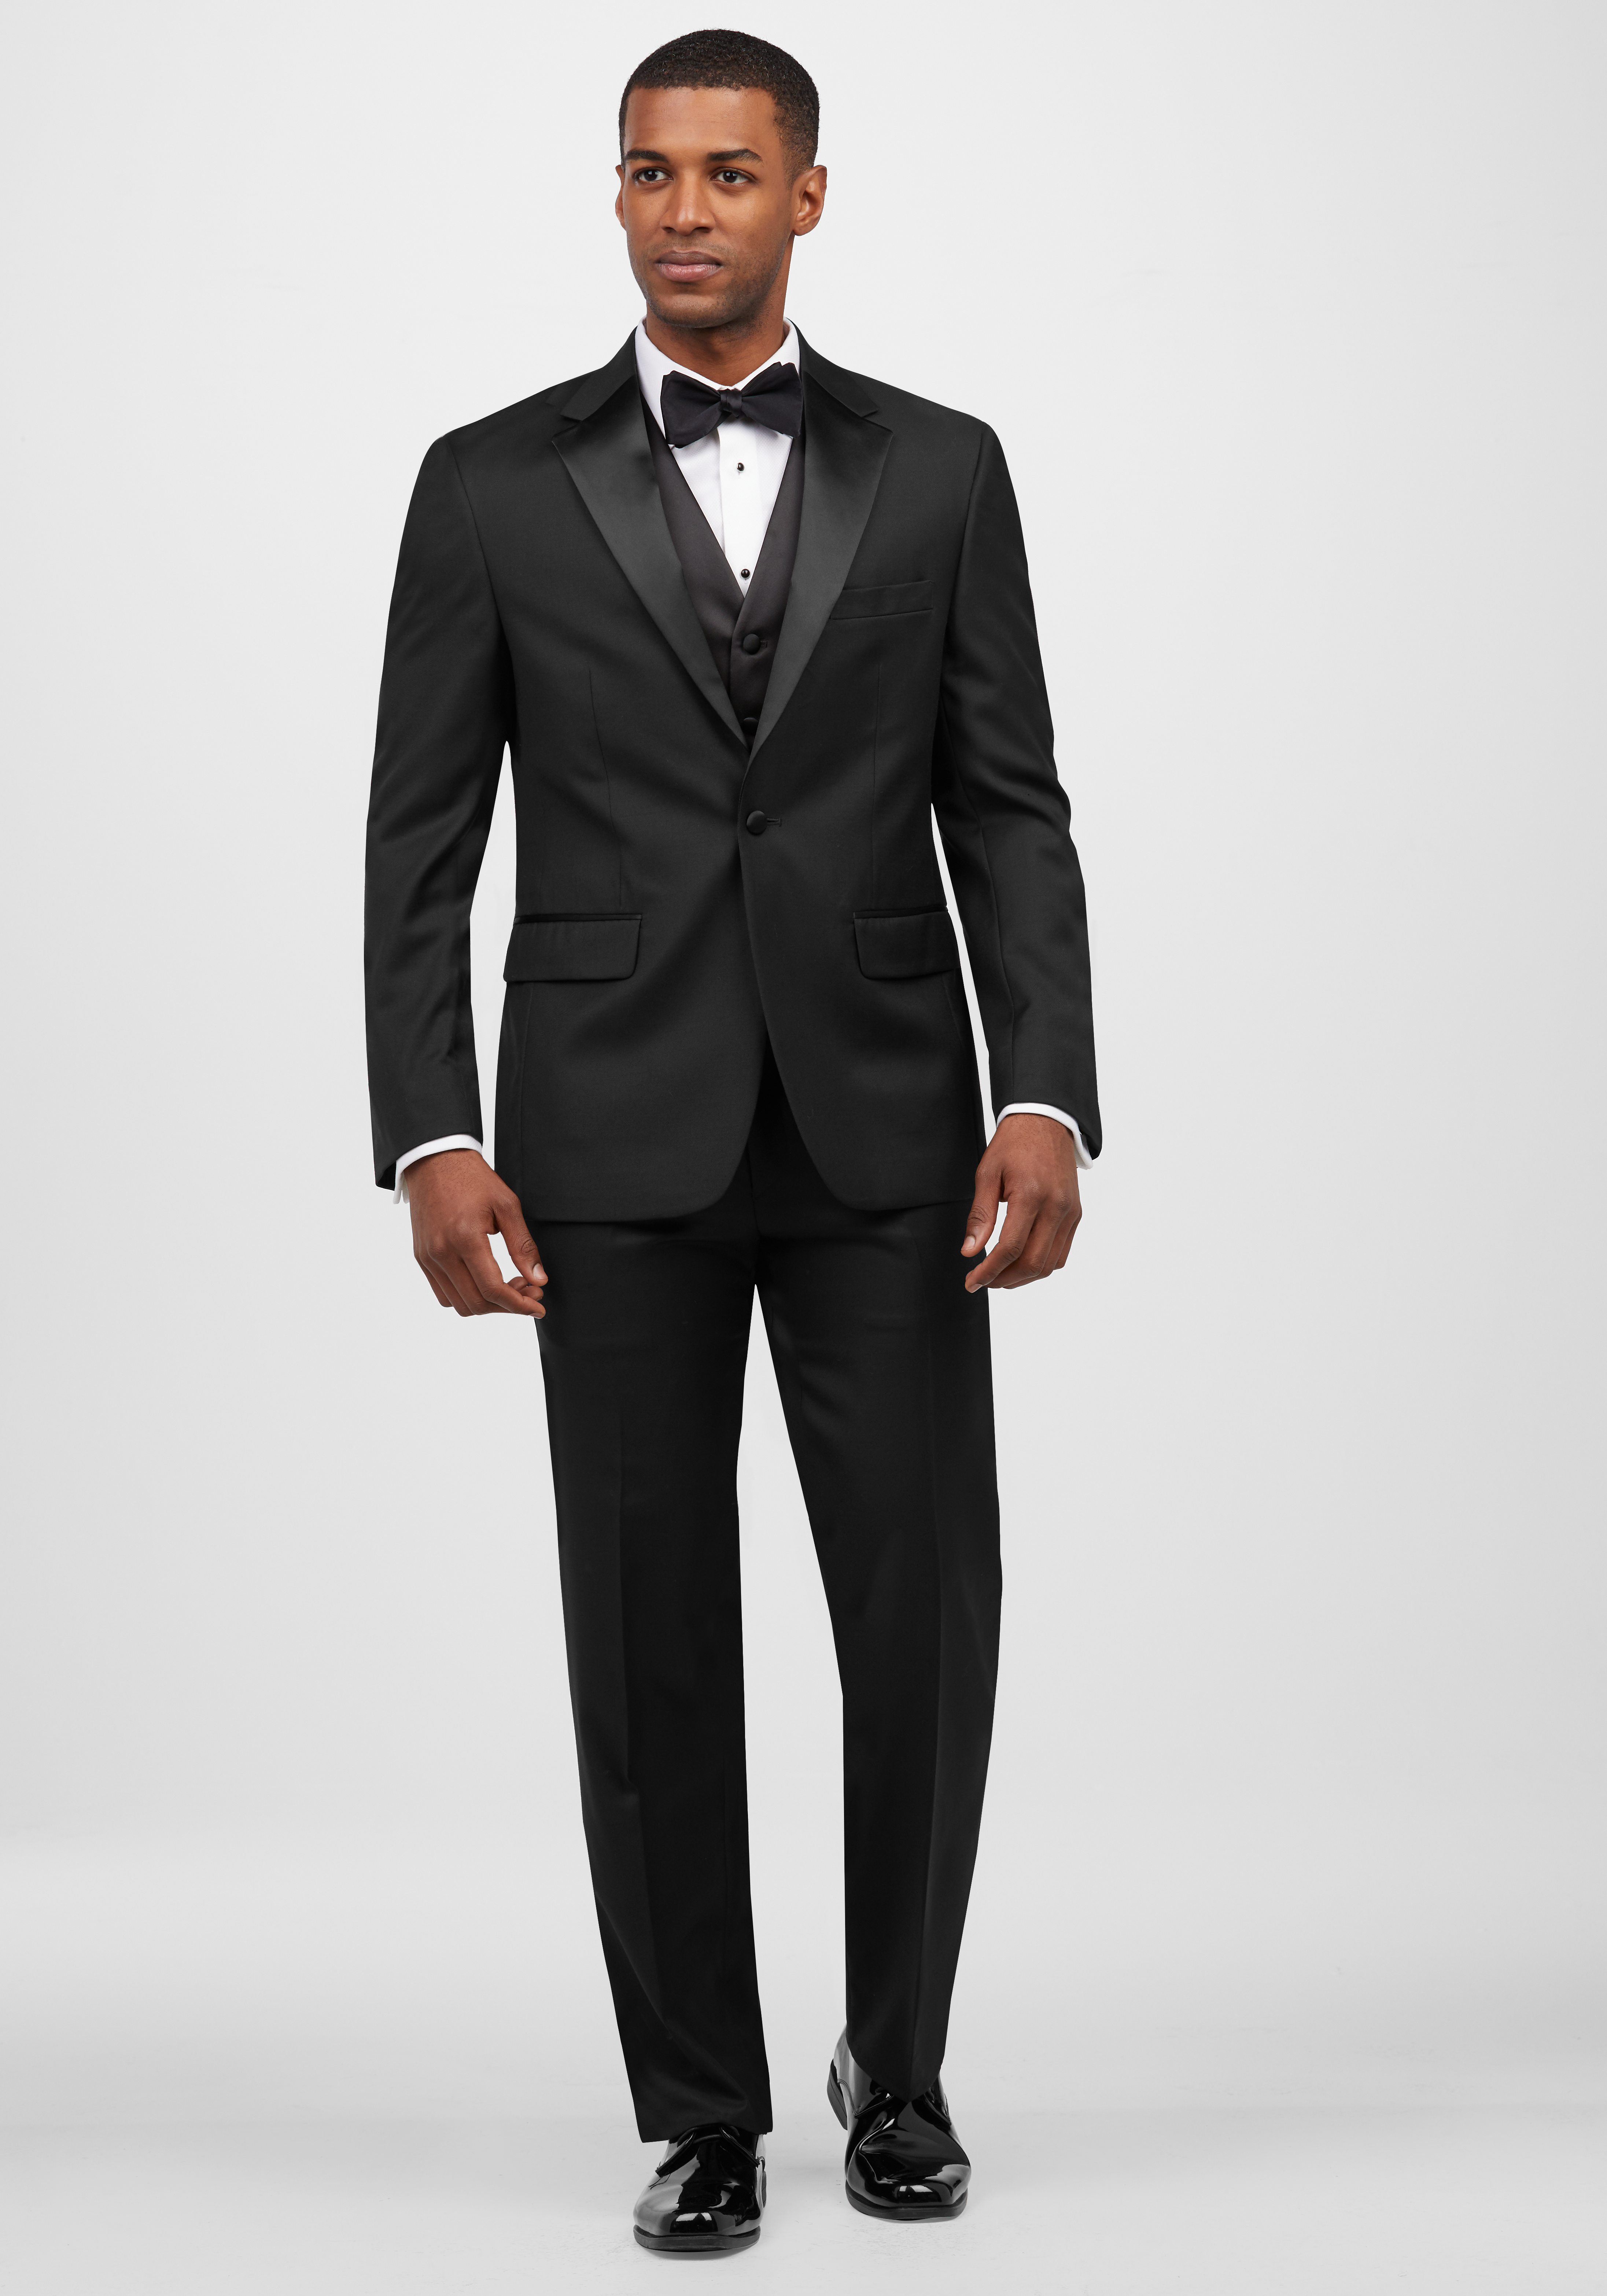 Black Men's Suits and Suit Separates